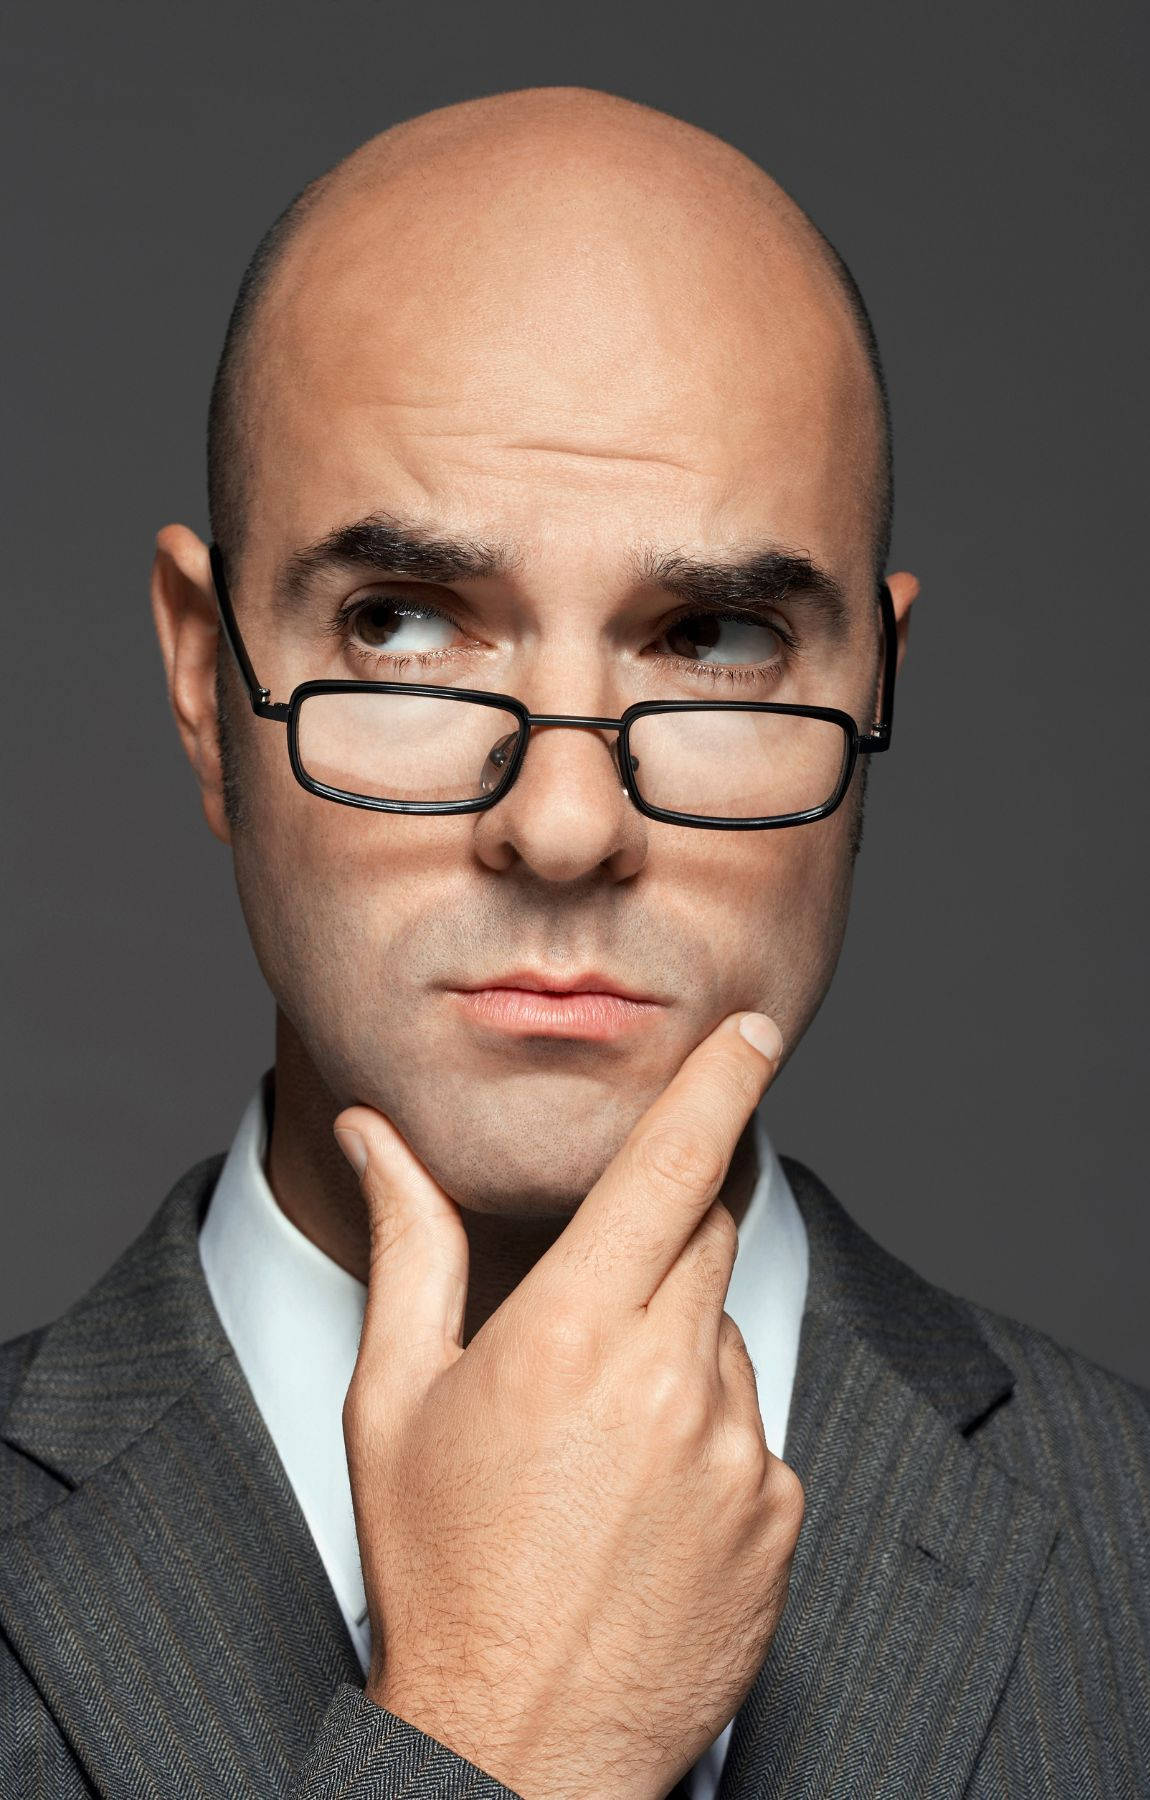 Bald Man Wearing Eyeglasses Picture